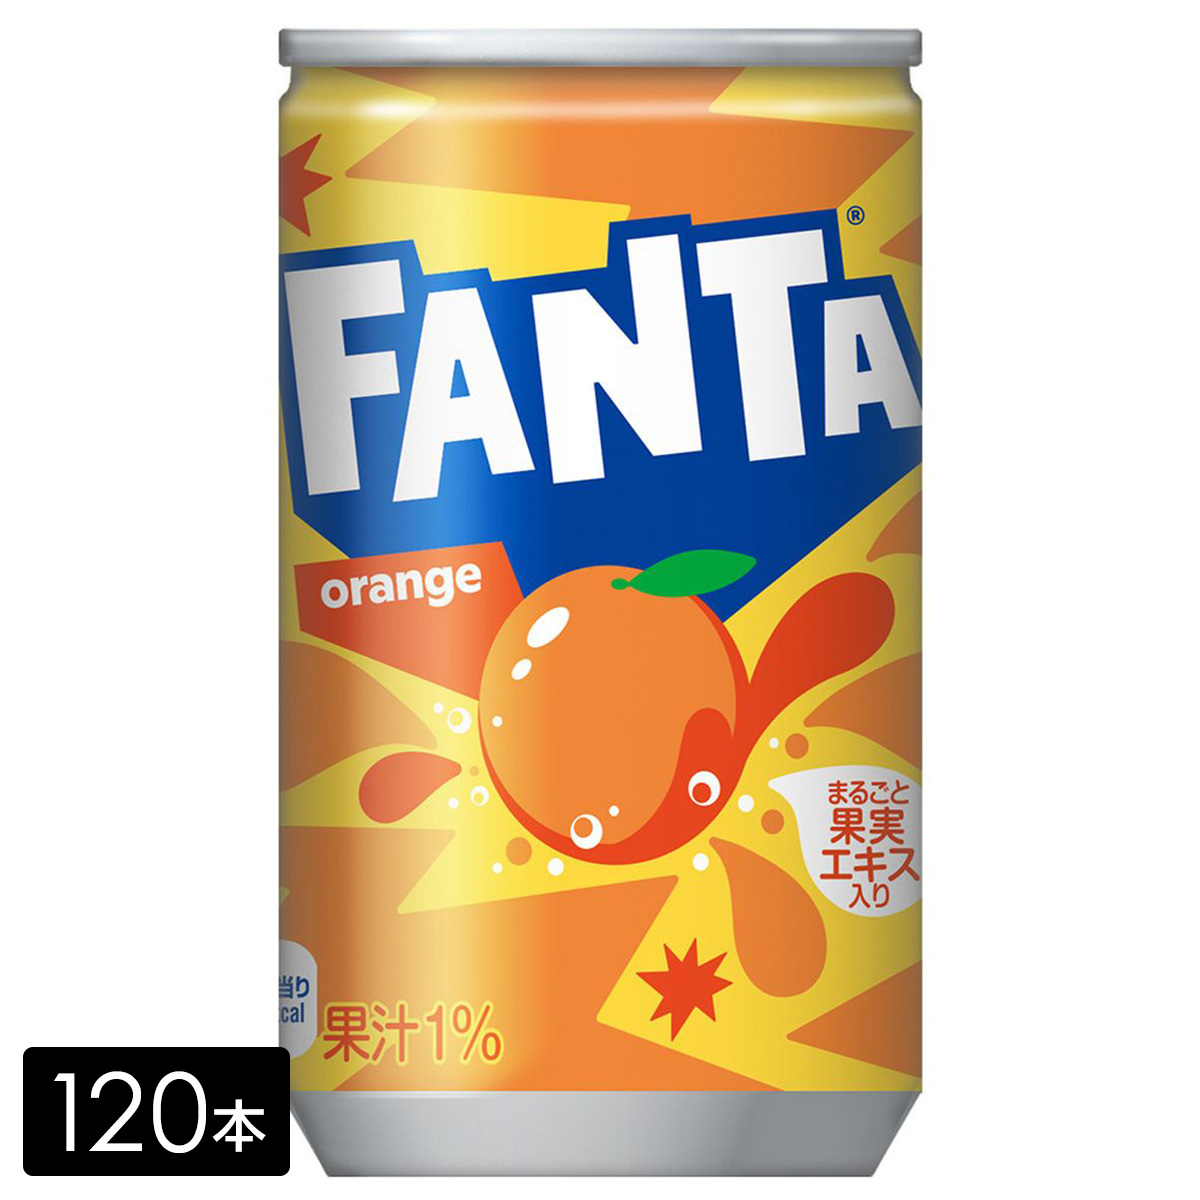 [送料無料]ファンタ オレンジ 果汁 160ml缶×120本(30本×4箱) 炭酸飲料 ペットボトル ケース売り まとめ買い